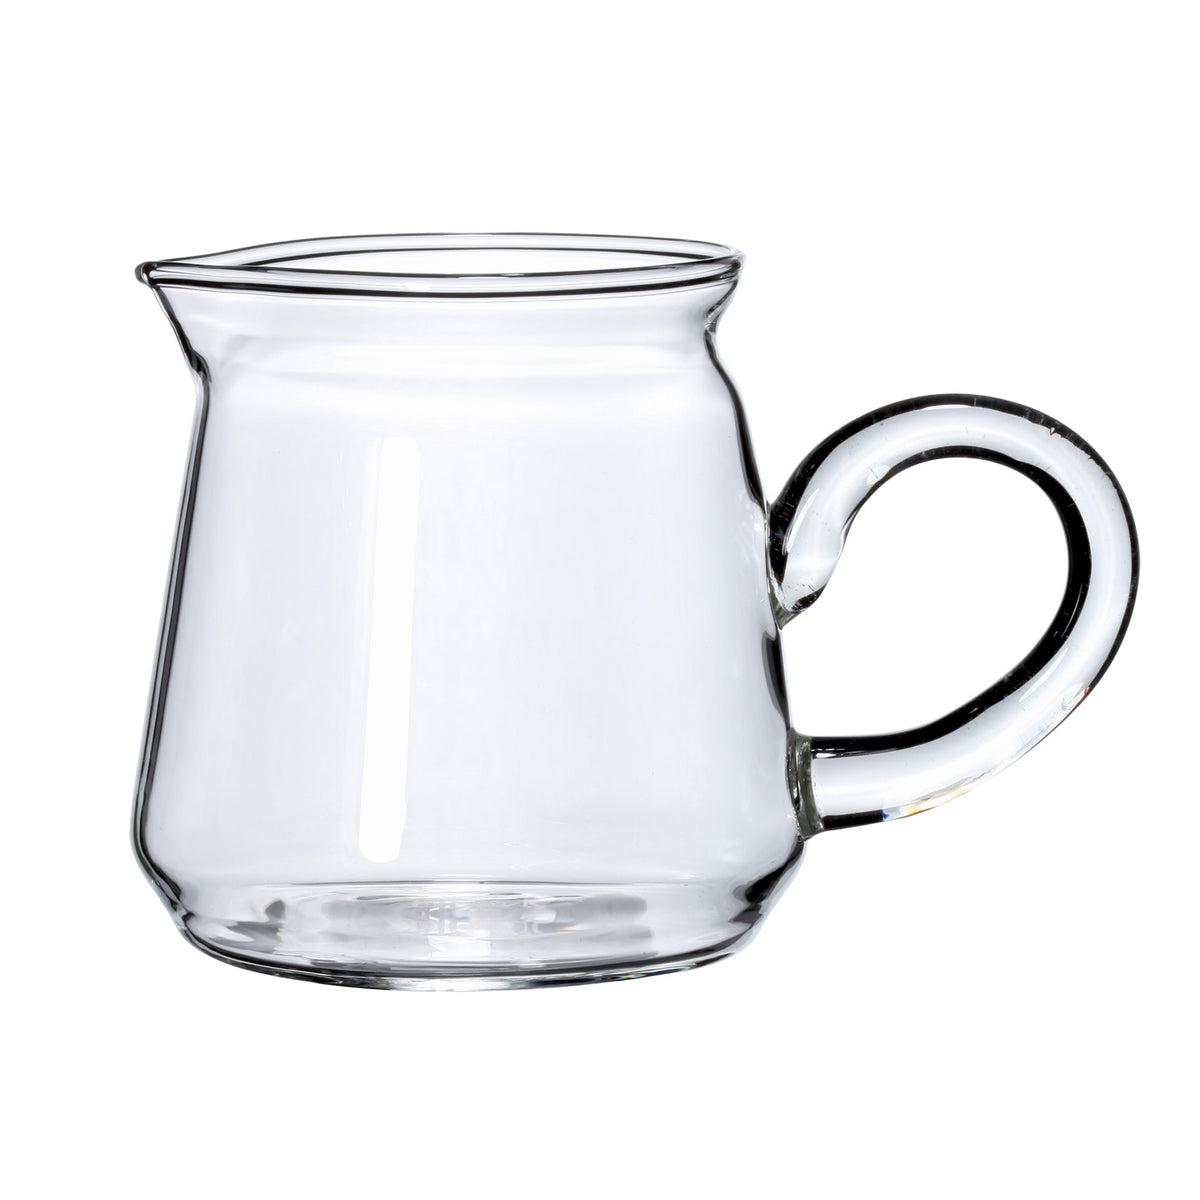 http://www.eilong.com/cdn/shop/products/glass-tea-pitcher-classical-pitcher-13oz-1_1200x1200.jpg?v=1652074262